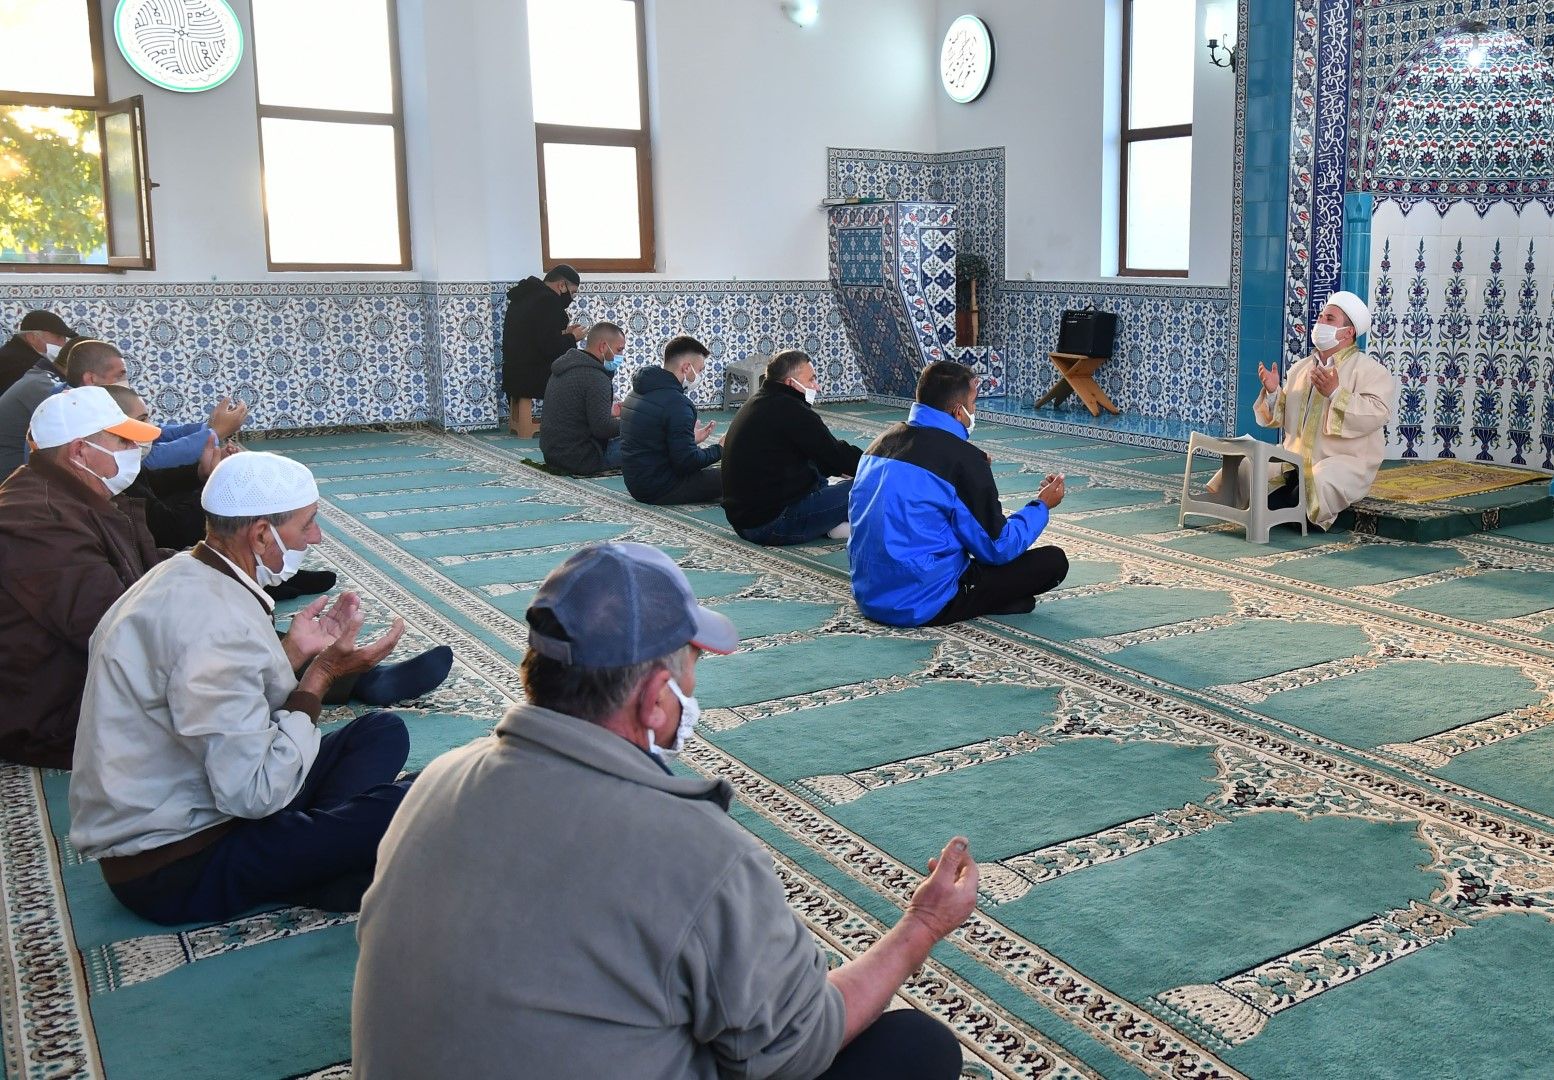 Със спазване на противоепидемичните мерки с празнична молитва-намаз в джамията "Хаджи Рюстем" започна тридневният празник за мюсюлманите - Рамазан Байрам